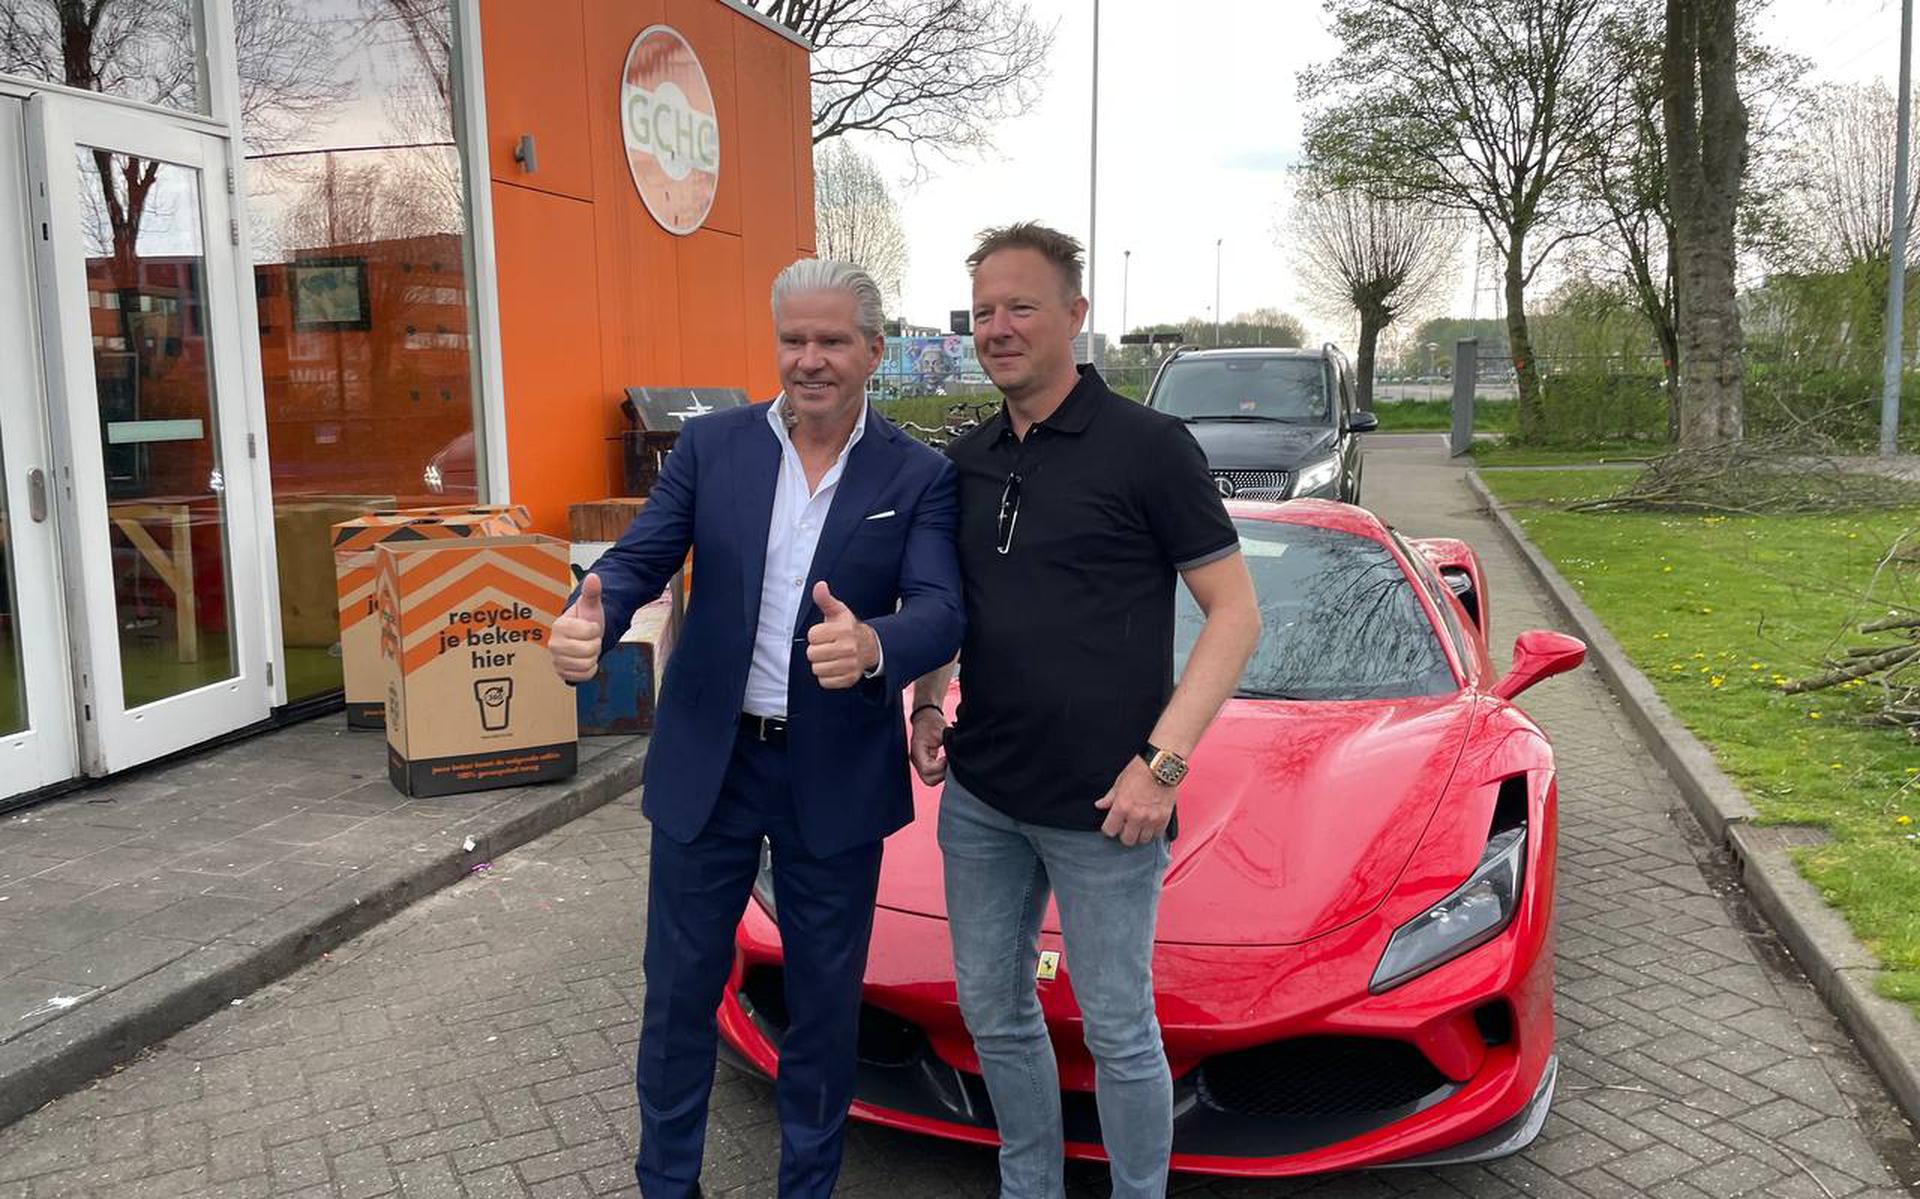 Dries Roelvink gareggia con il capo immobiliare Wim de Vries nella sua Ferrari rossa attraverso il campo Forward.  “Gli M&M blu funzionavano ancora, ma gli asciugamani puliti no”